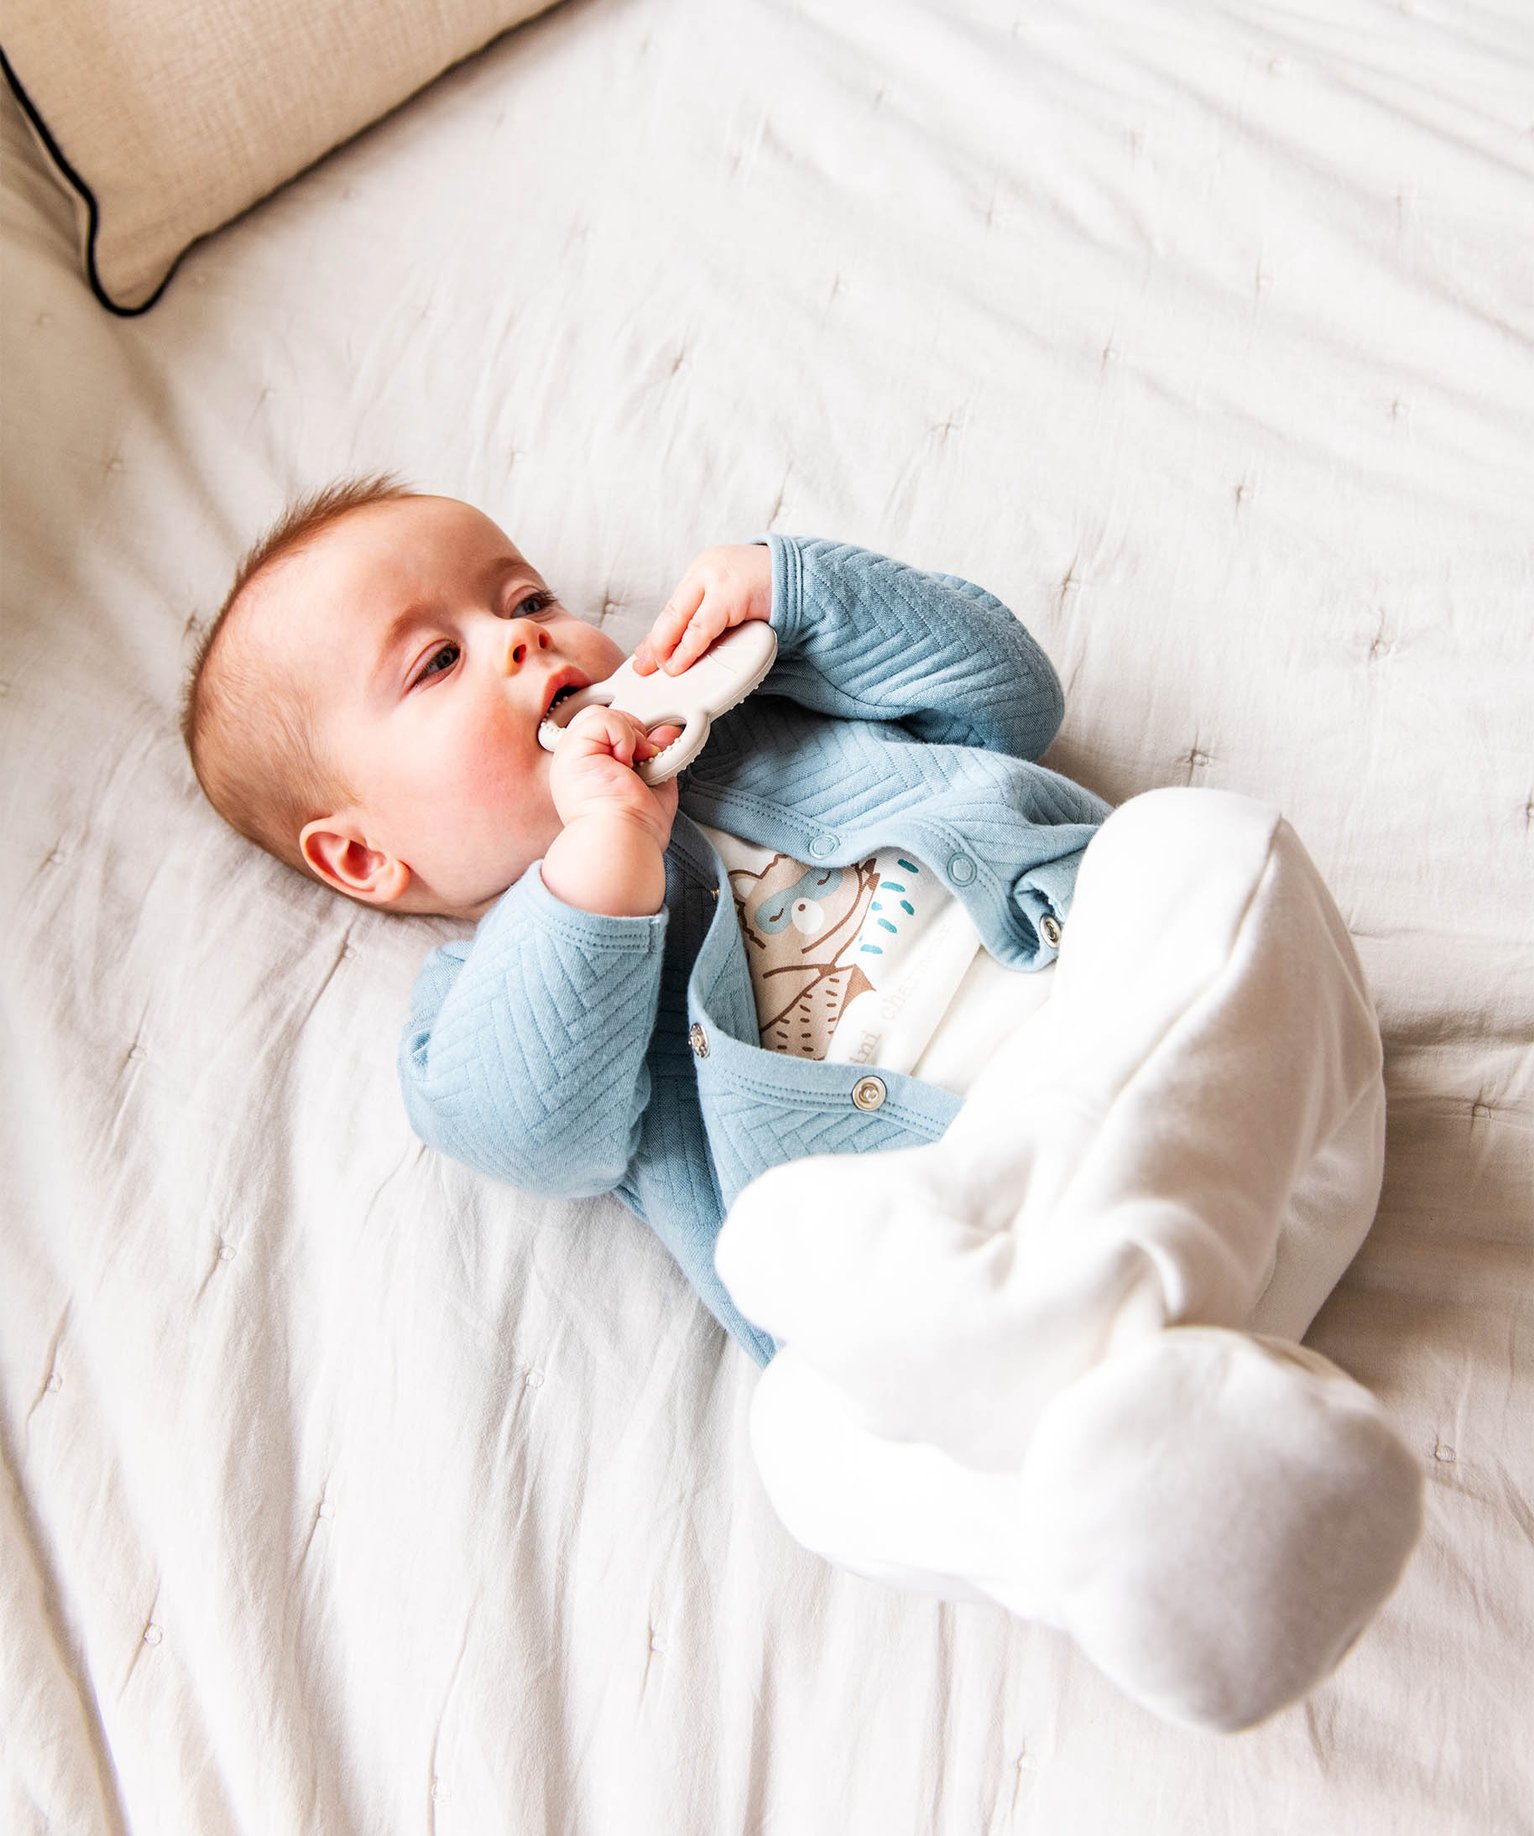 Pyjama bébé garçon vache (Du 6 mois au 24 mois)